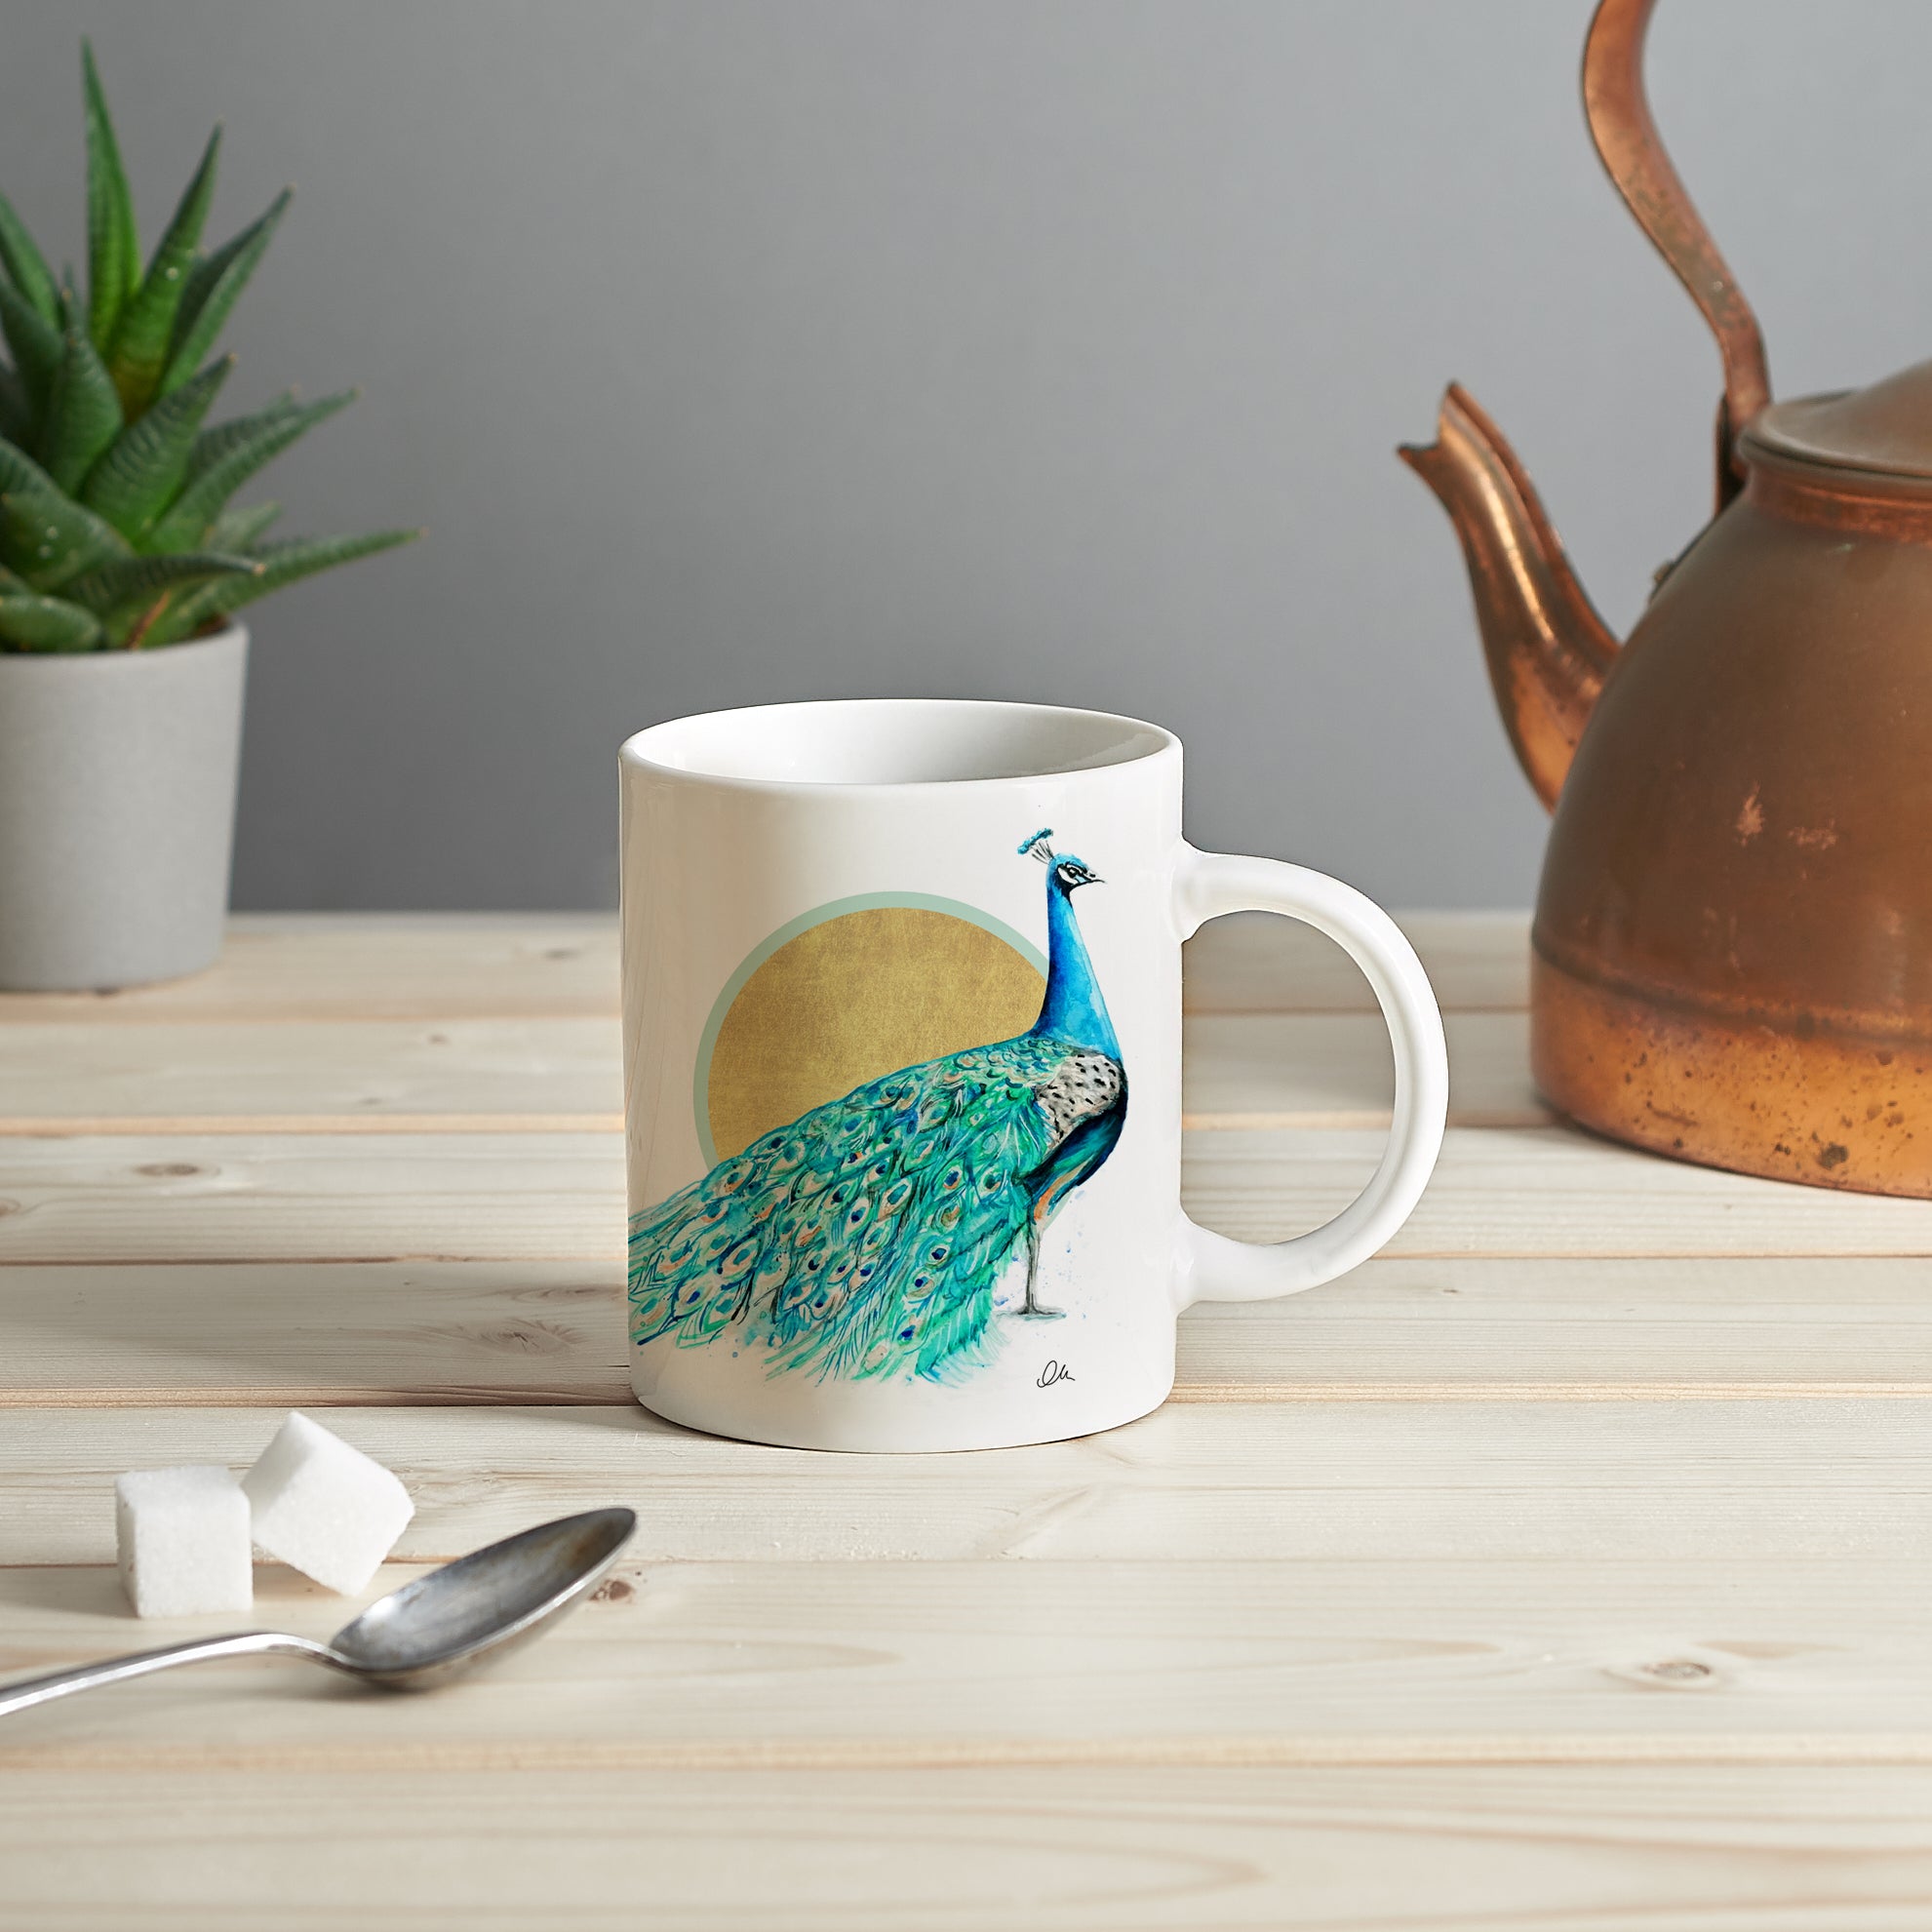 Peacock mug